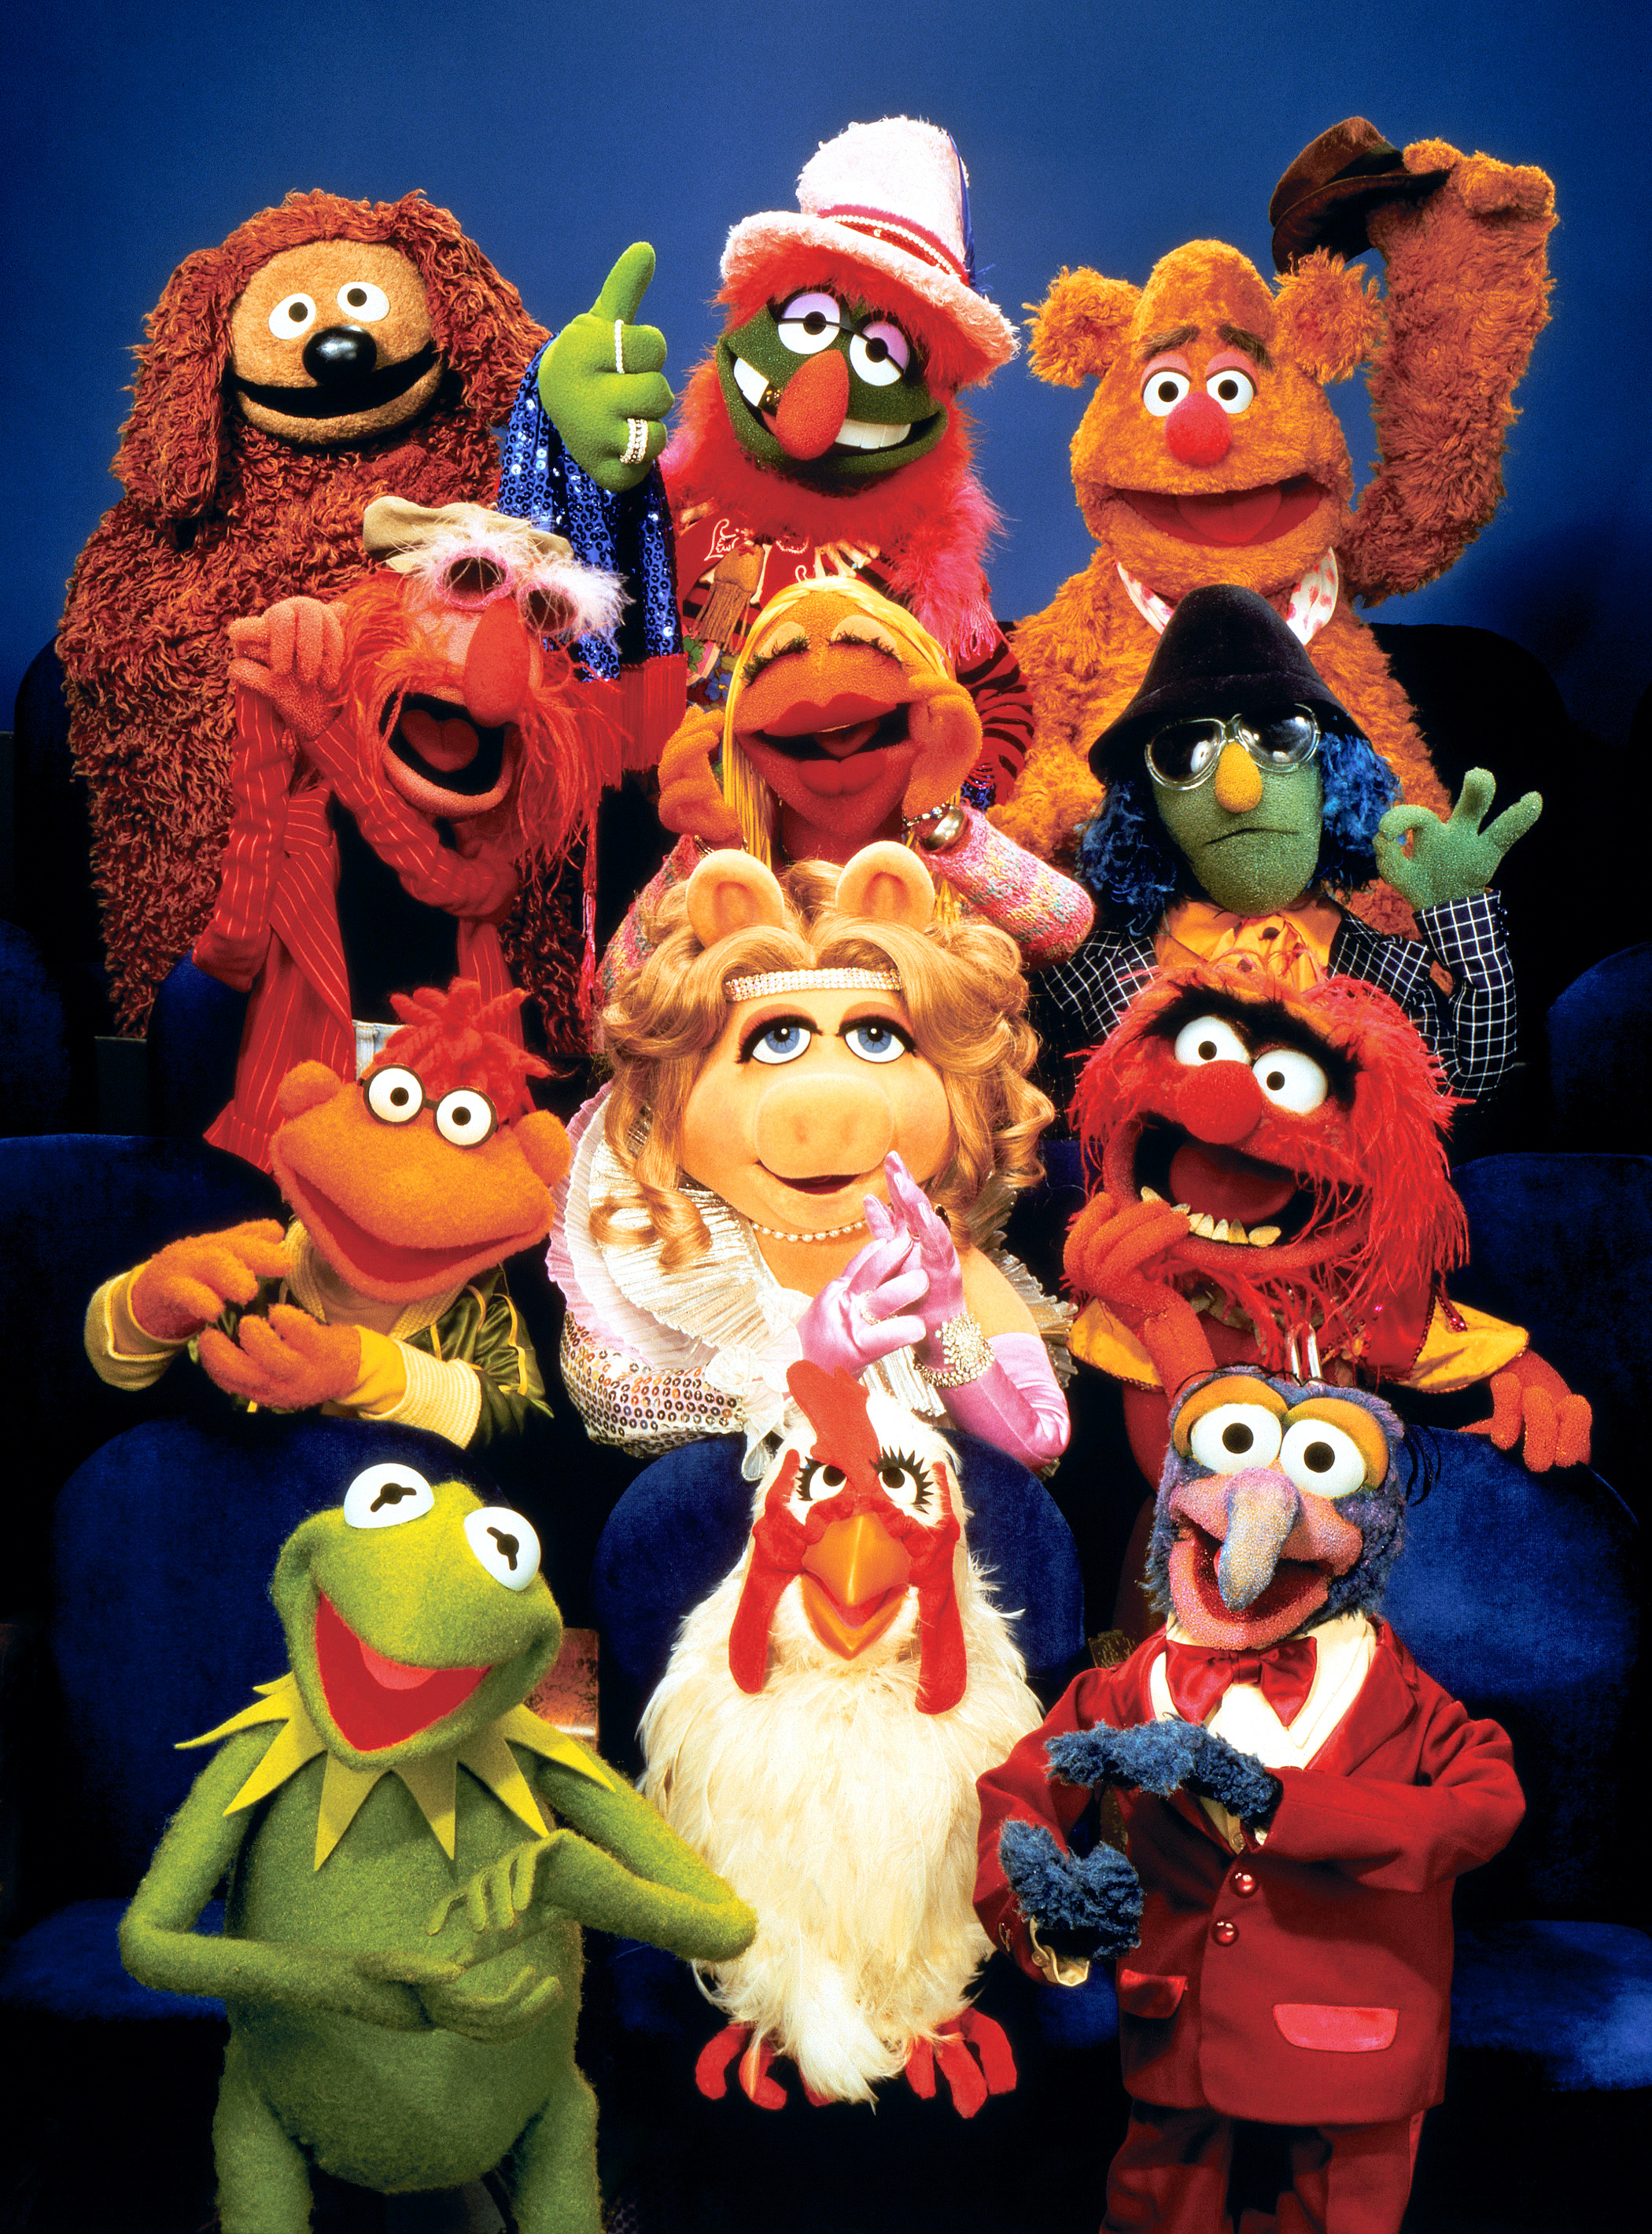 The Muppet Show HD wallpapers, Desktop wallpaper - most viewed